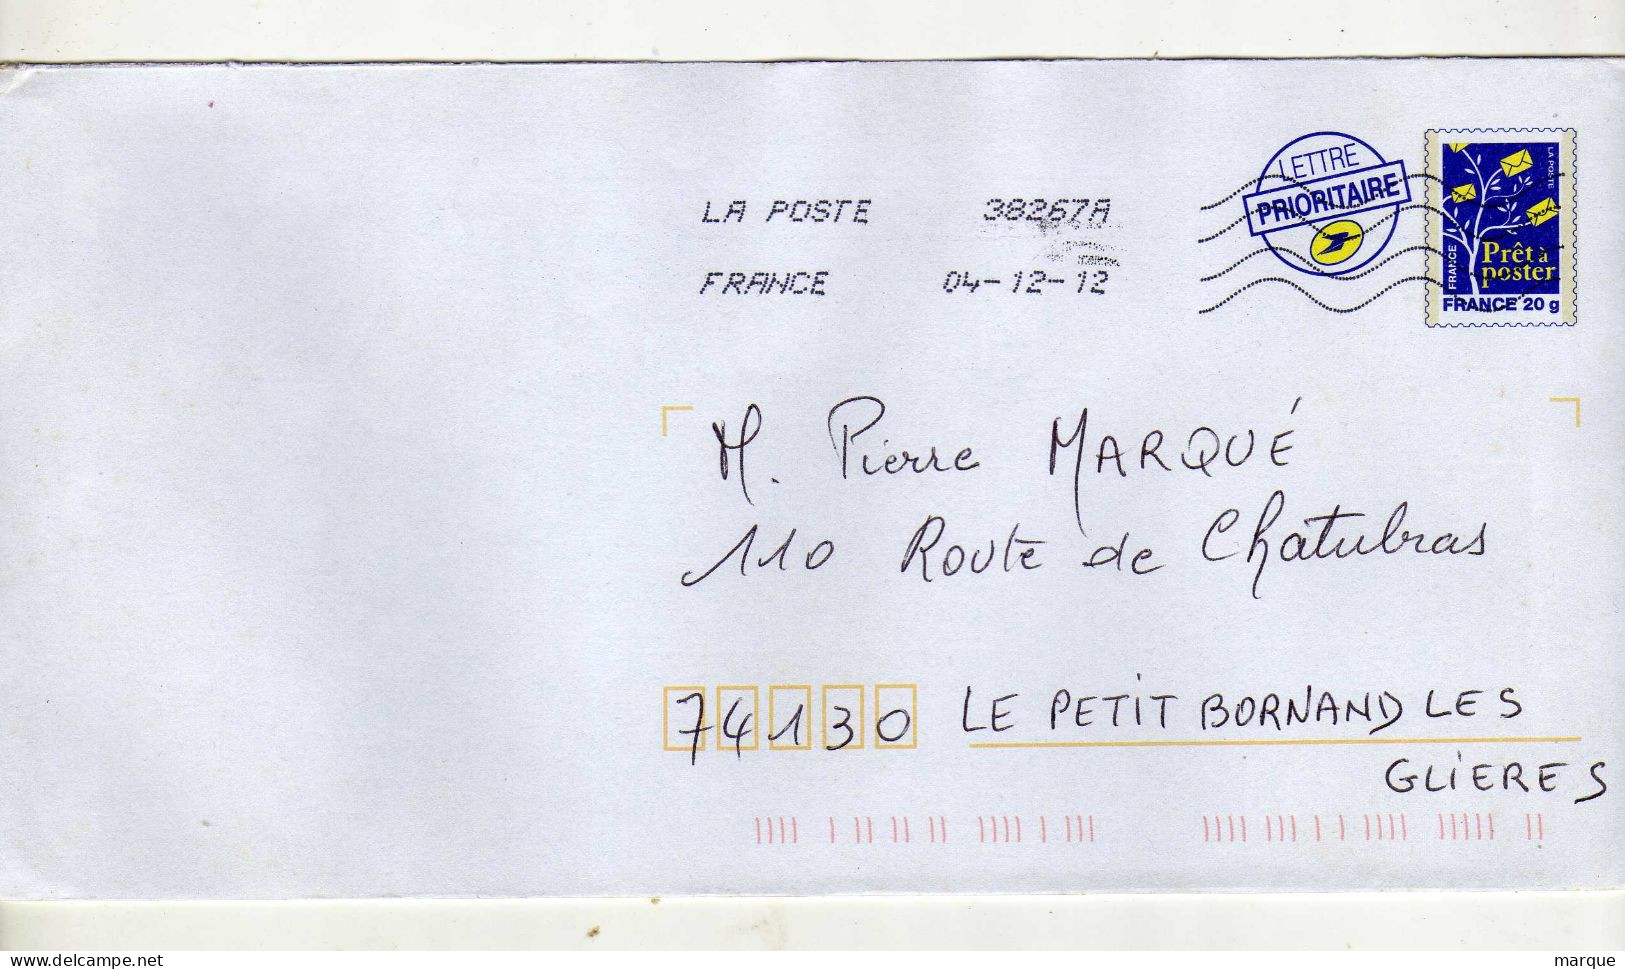 Enveloppe FRANCE Prêt à Poster Lettre Prioritaire 20g Oblitération LA POSTE 38267A 04/12/2012 - PAP: Ristampa/Logo Bleu